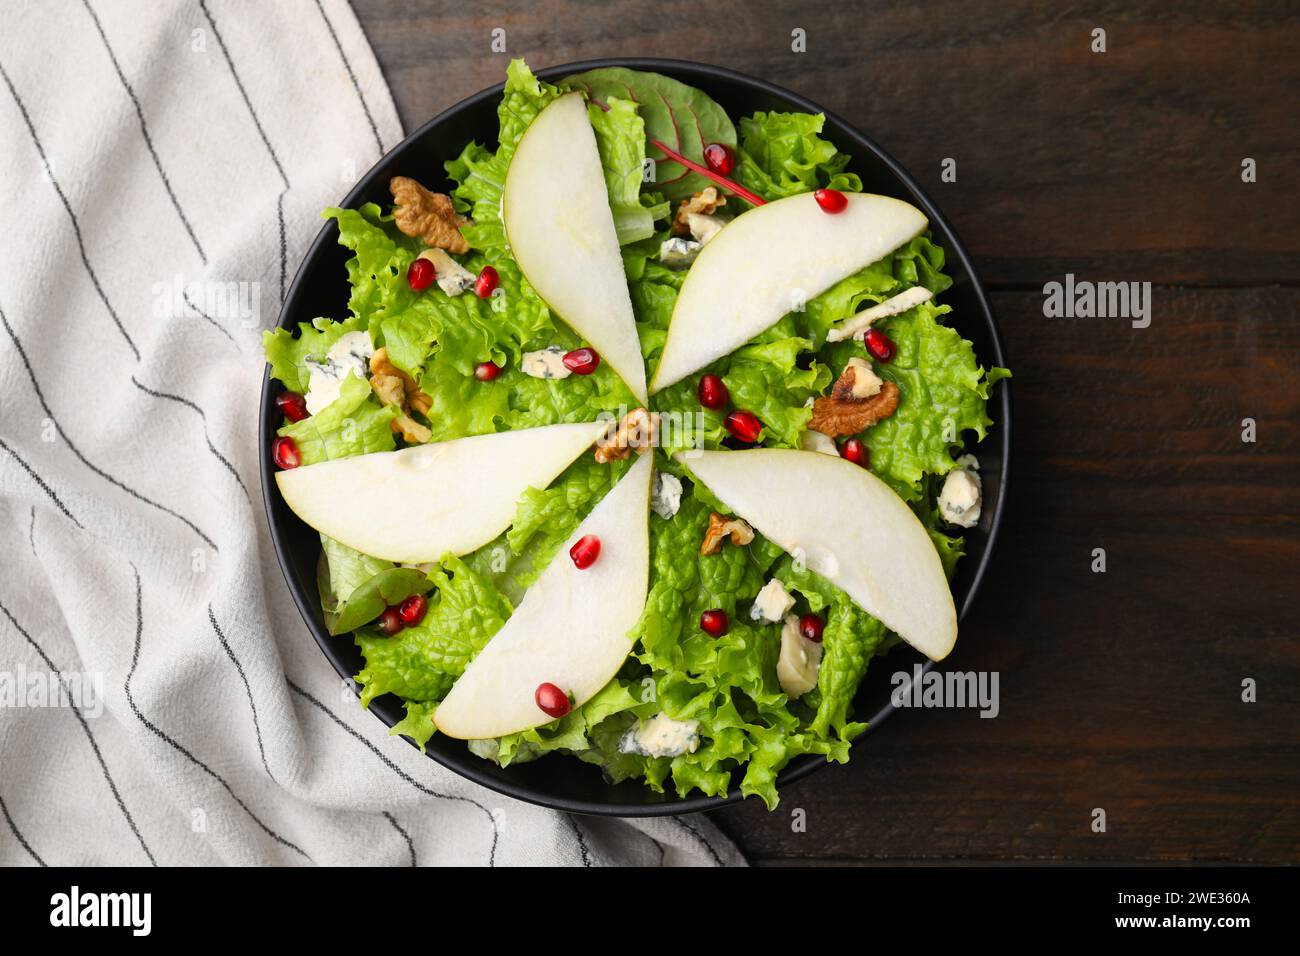 Délicieuse salade de poires dans un bol sur une table en bois, vue de dessus Banque D'Images